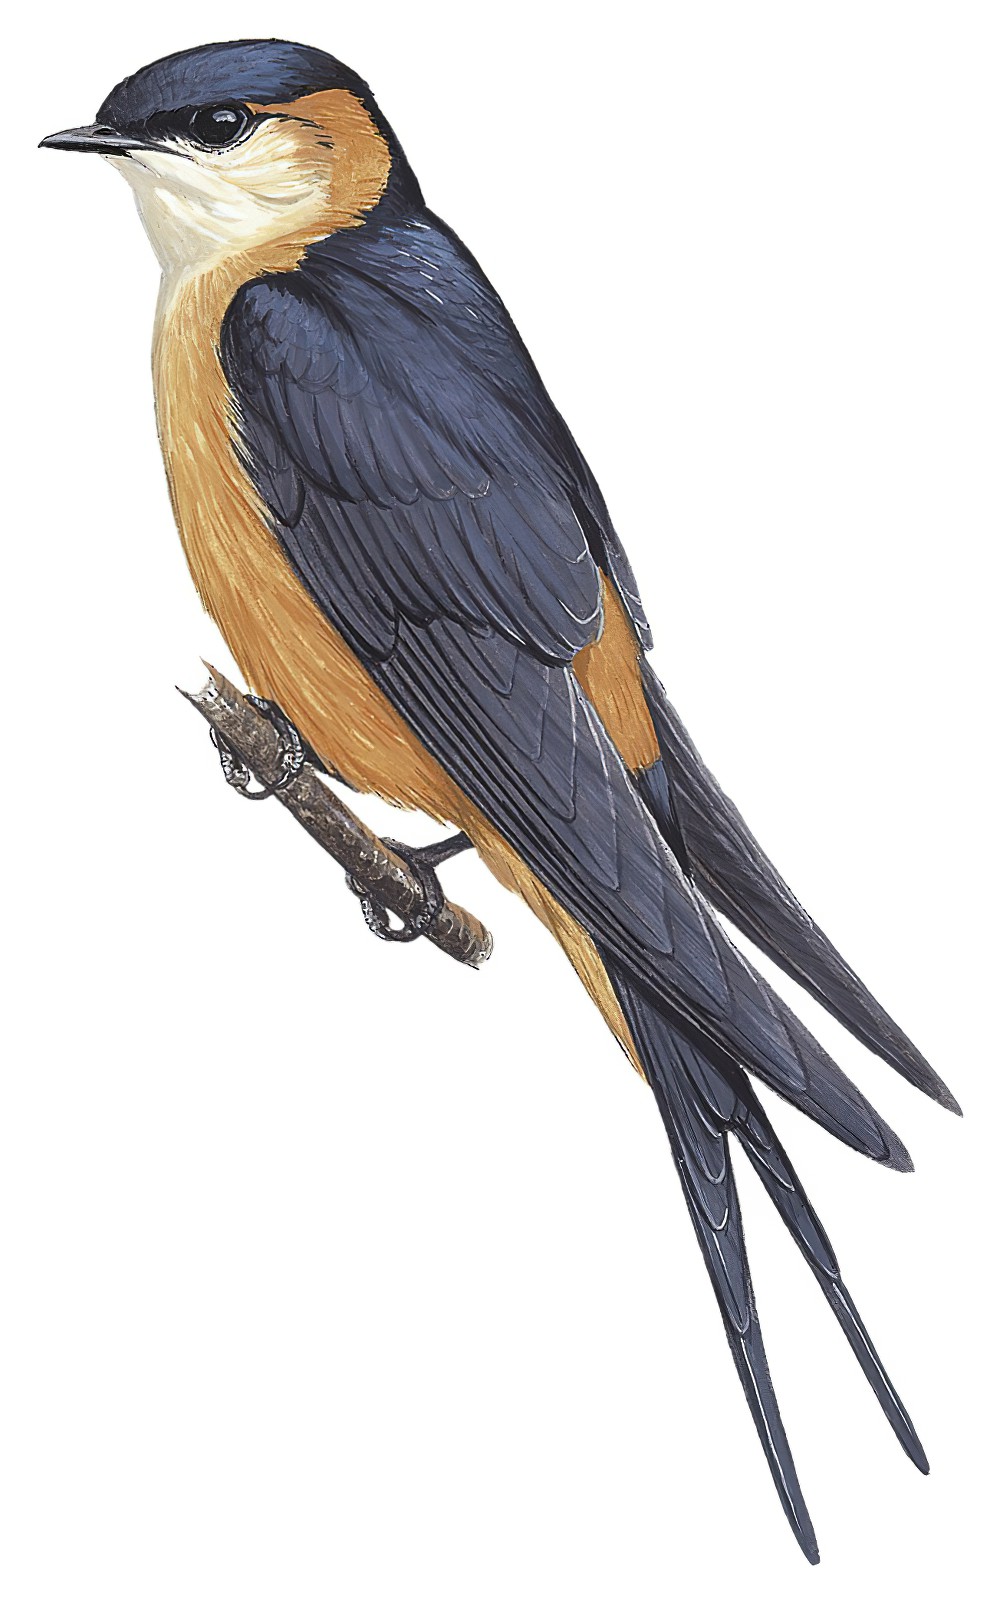 Mosque Swallow / Cecropis senegalensis